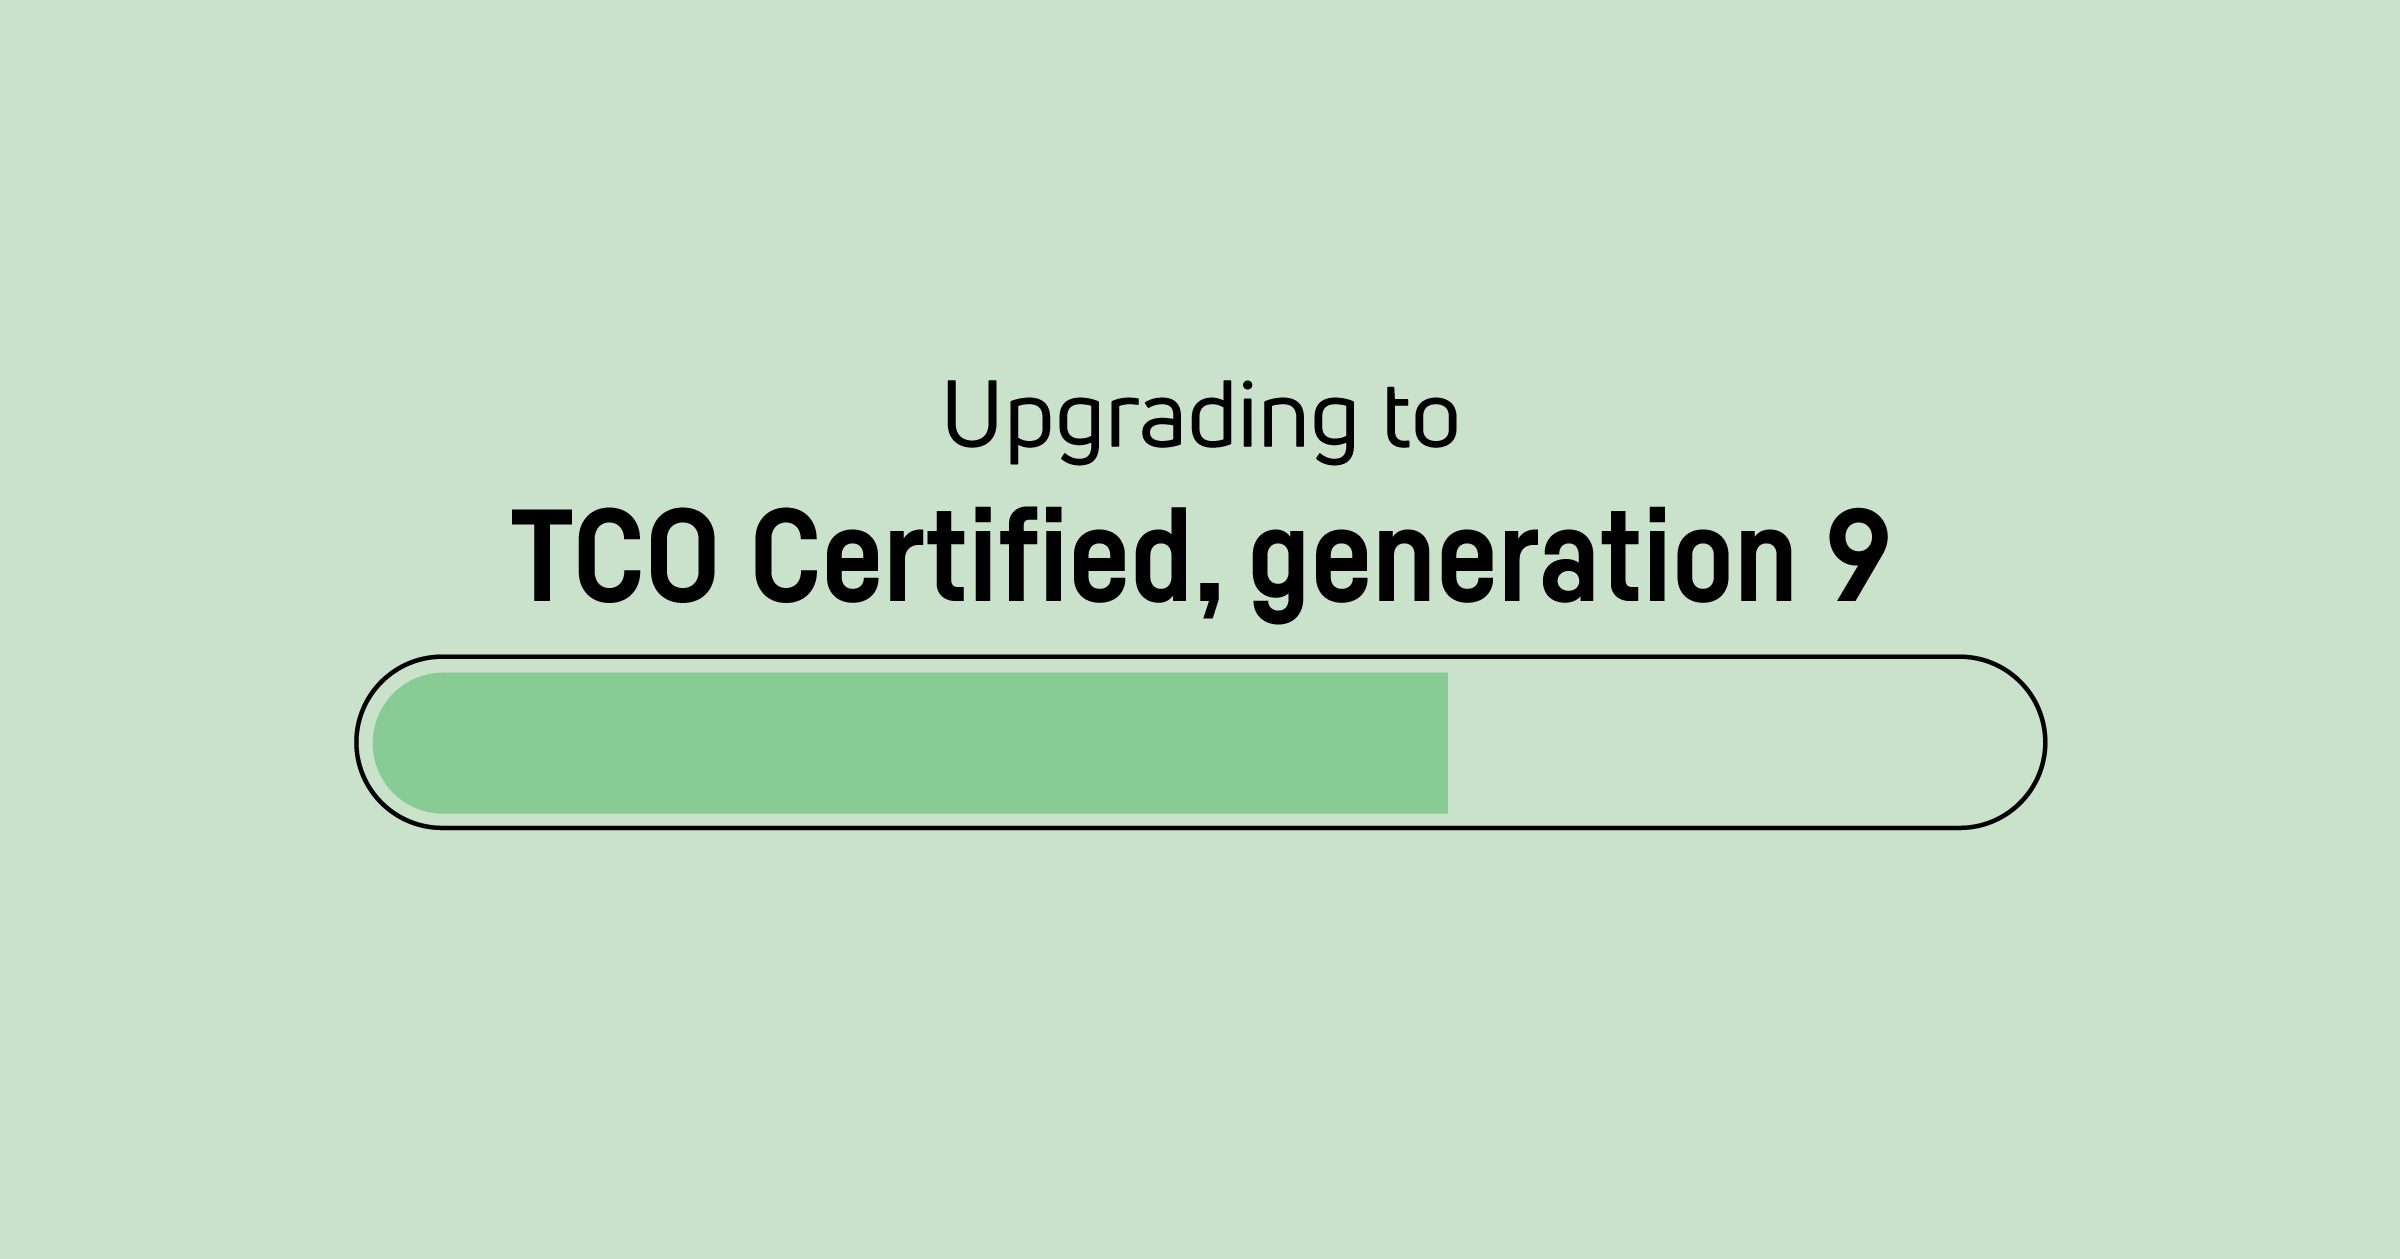 Es hora de actualizar TCO Certified, generation 8 certificados